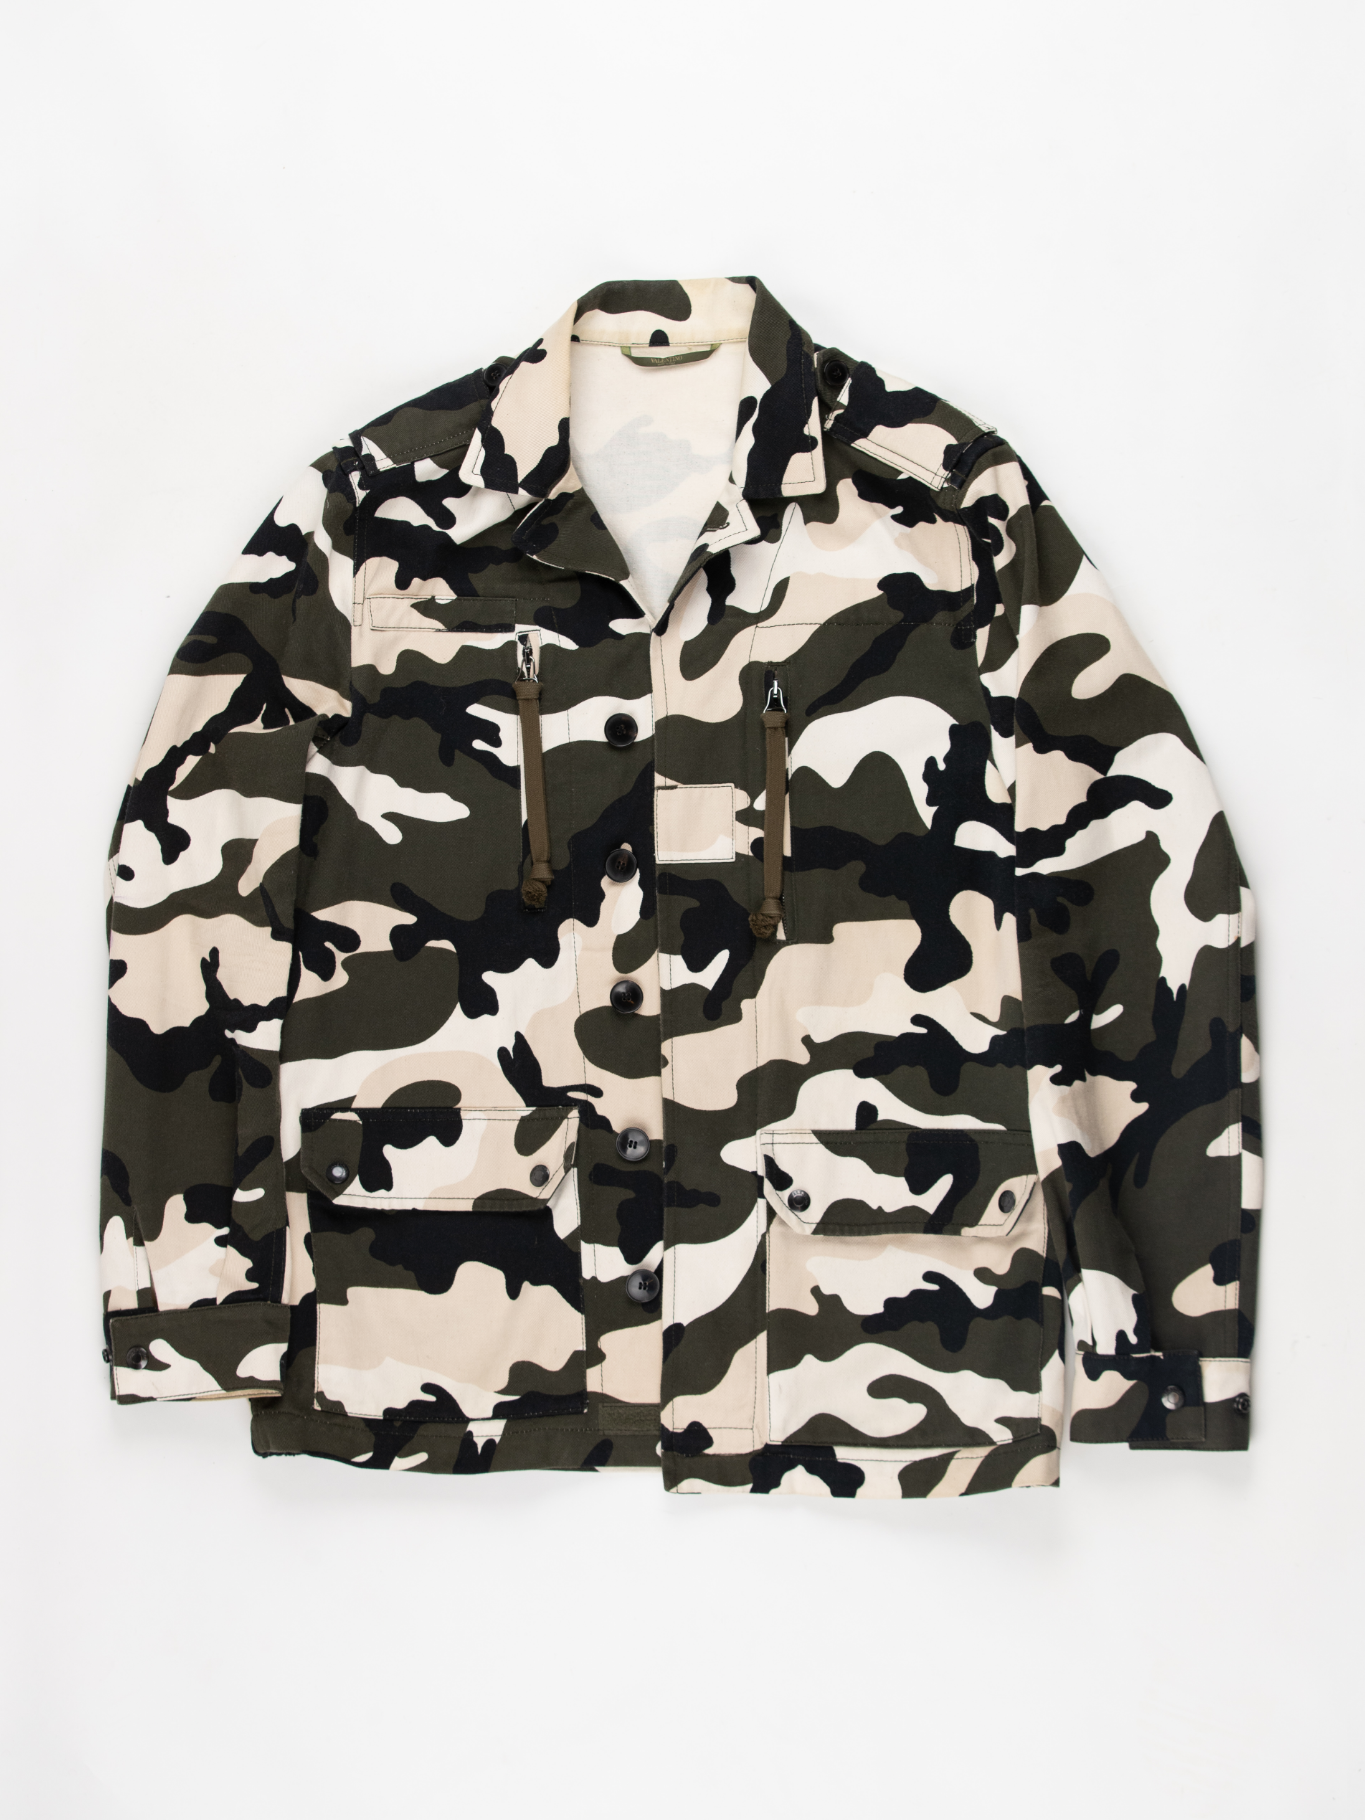 Camouflage jacket